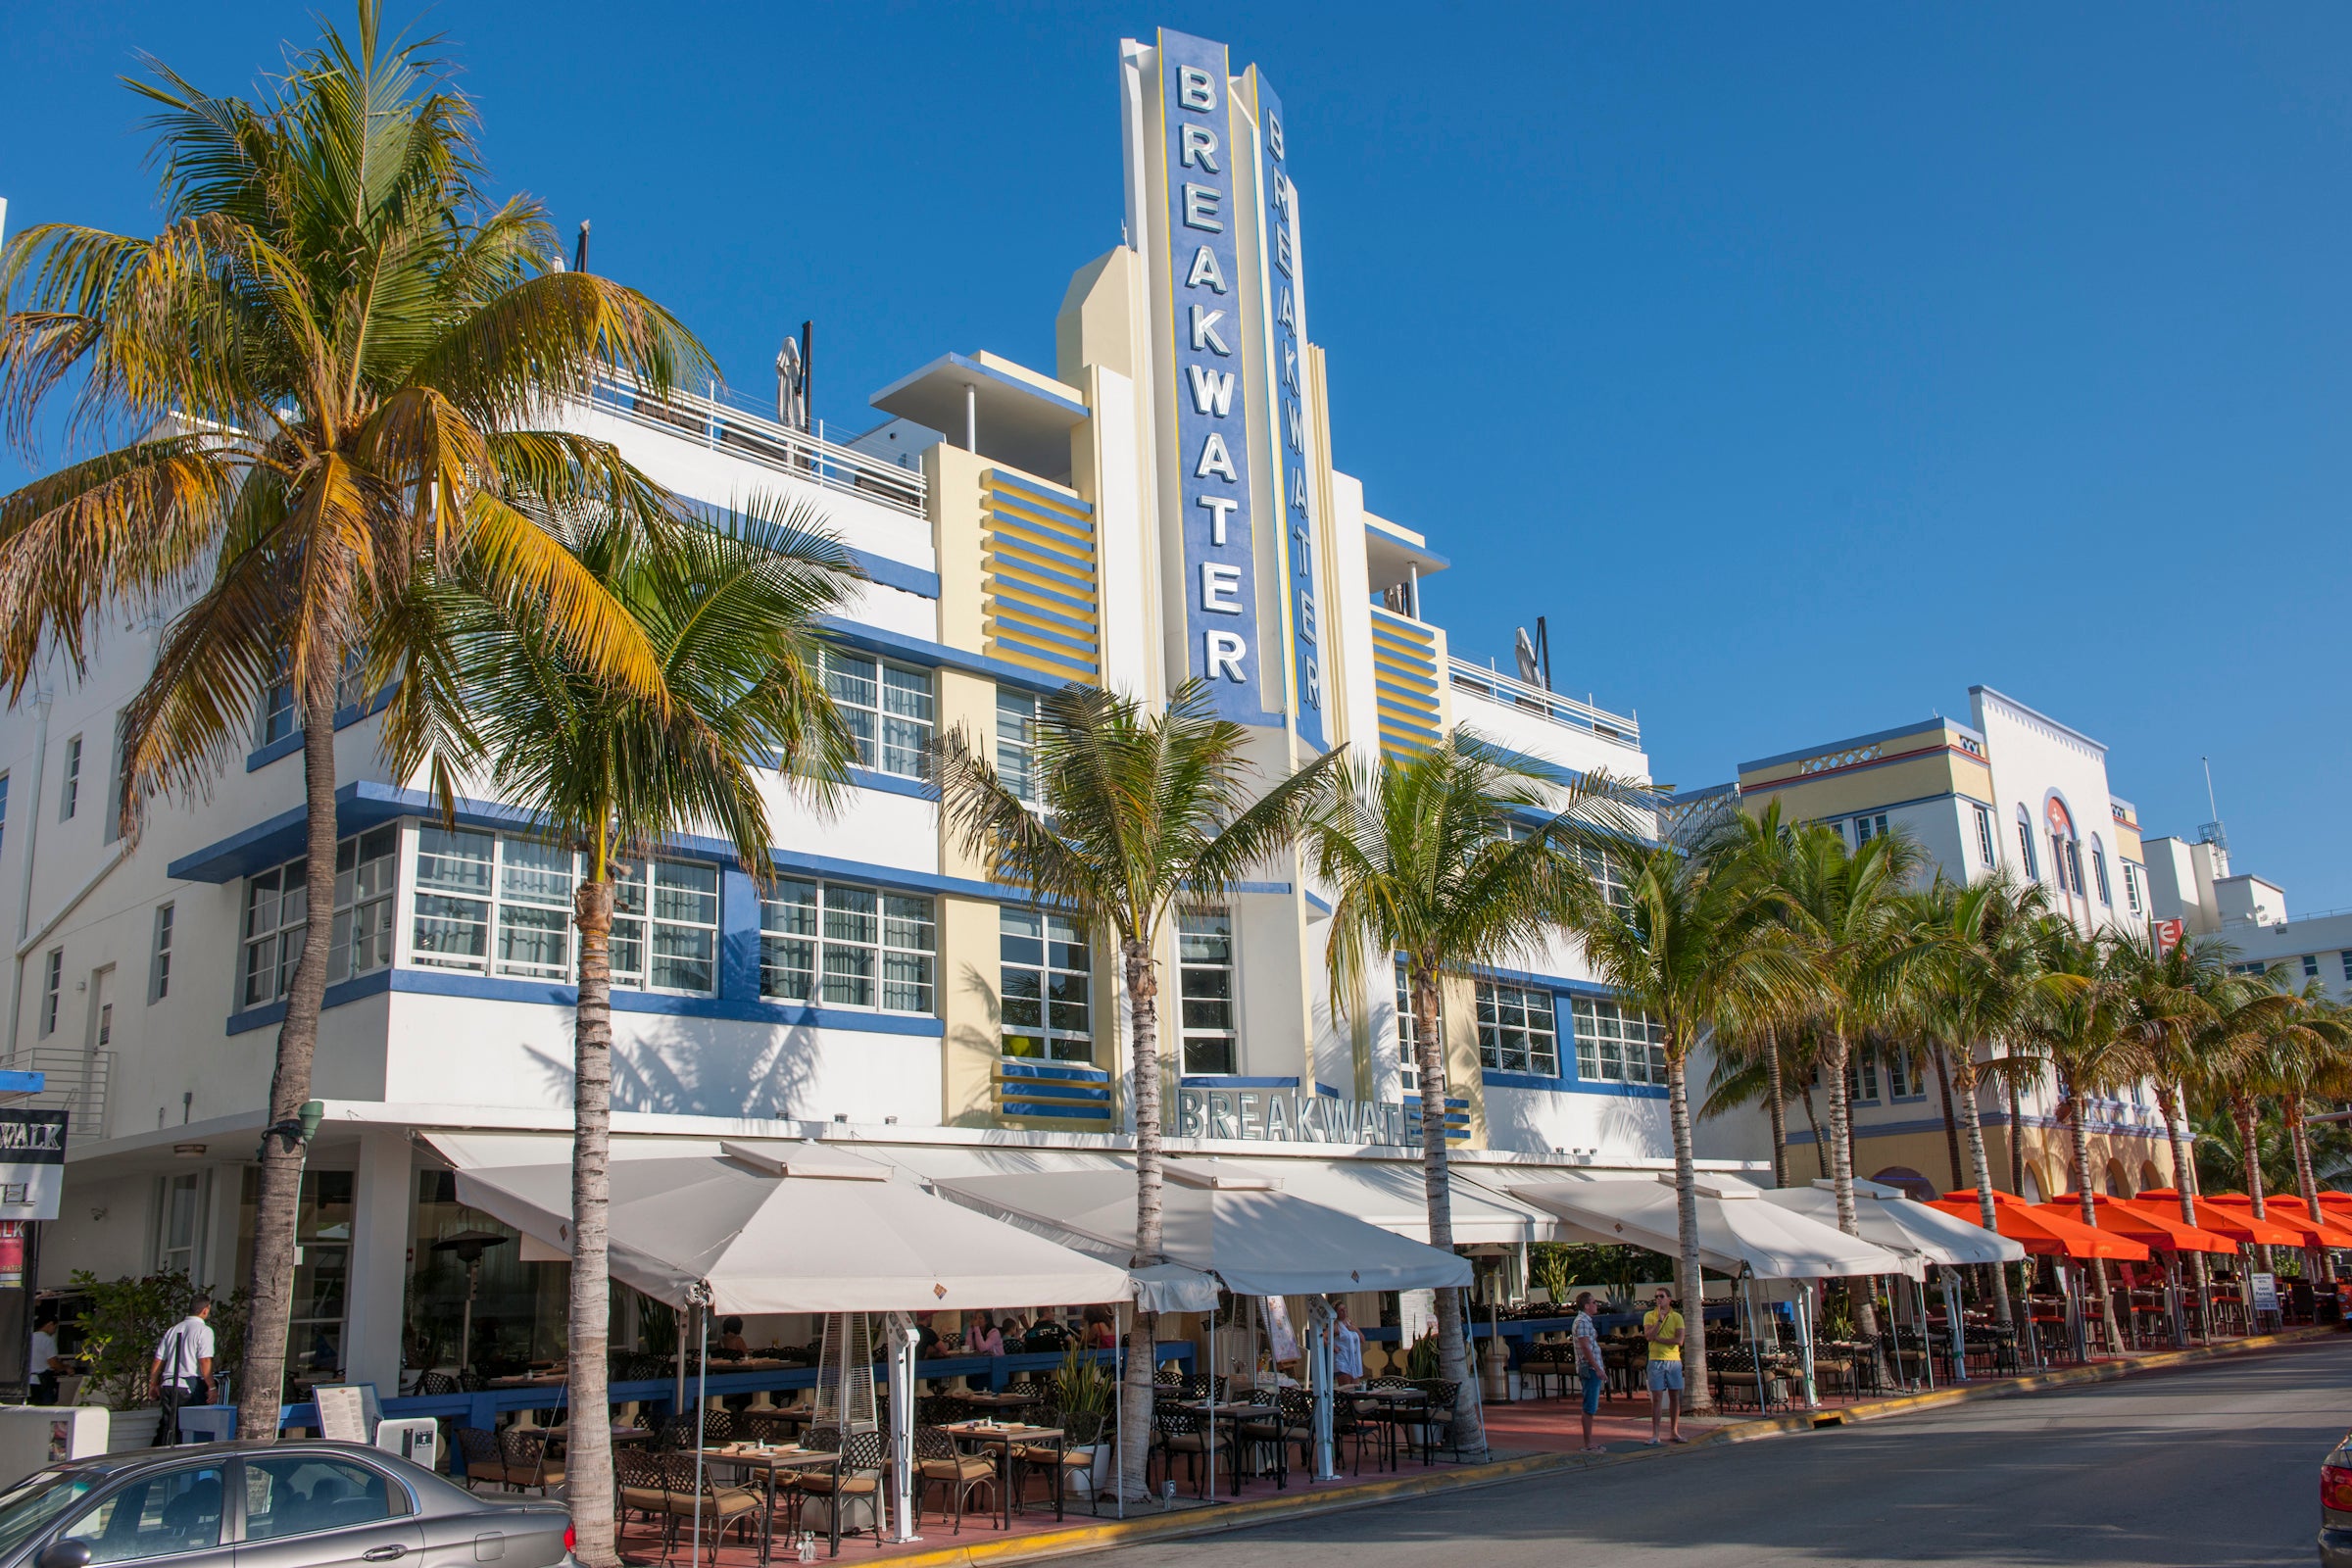 The facade of the Breakwater hotel, classic Art Deco in Miami